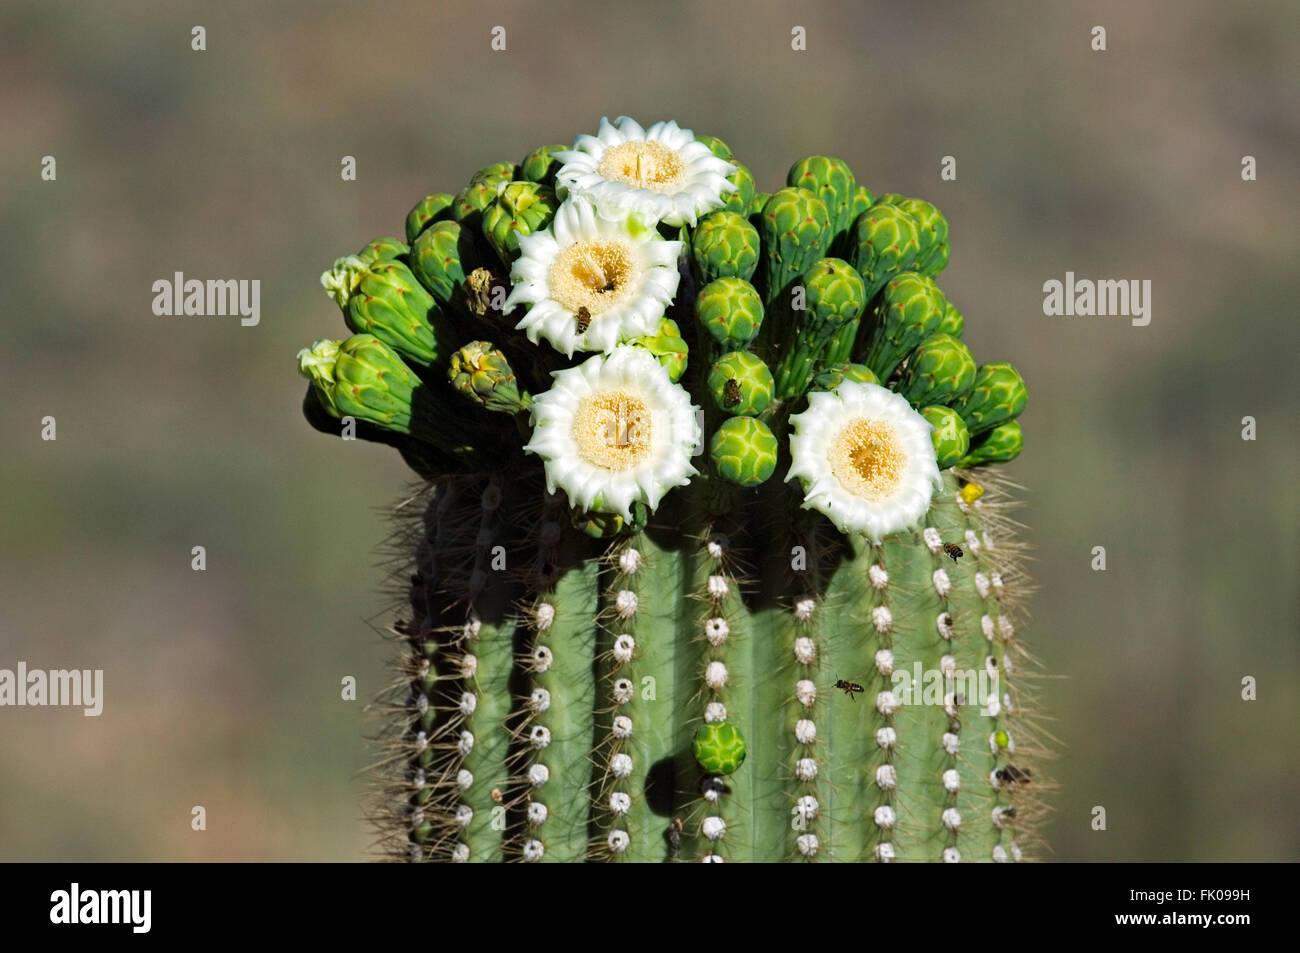 Una Mujer Fotografía A Las Flores En Una Rama De Cactus Saguaro Extraño  Fotos, retratos, imágenes y fotografía de archivo libres de derecho. Image  19913623